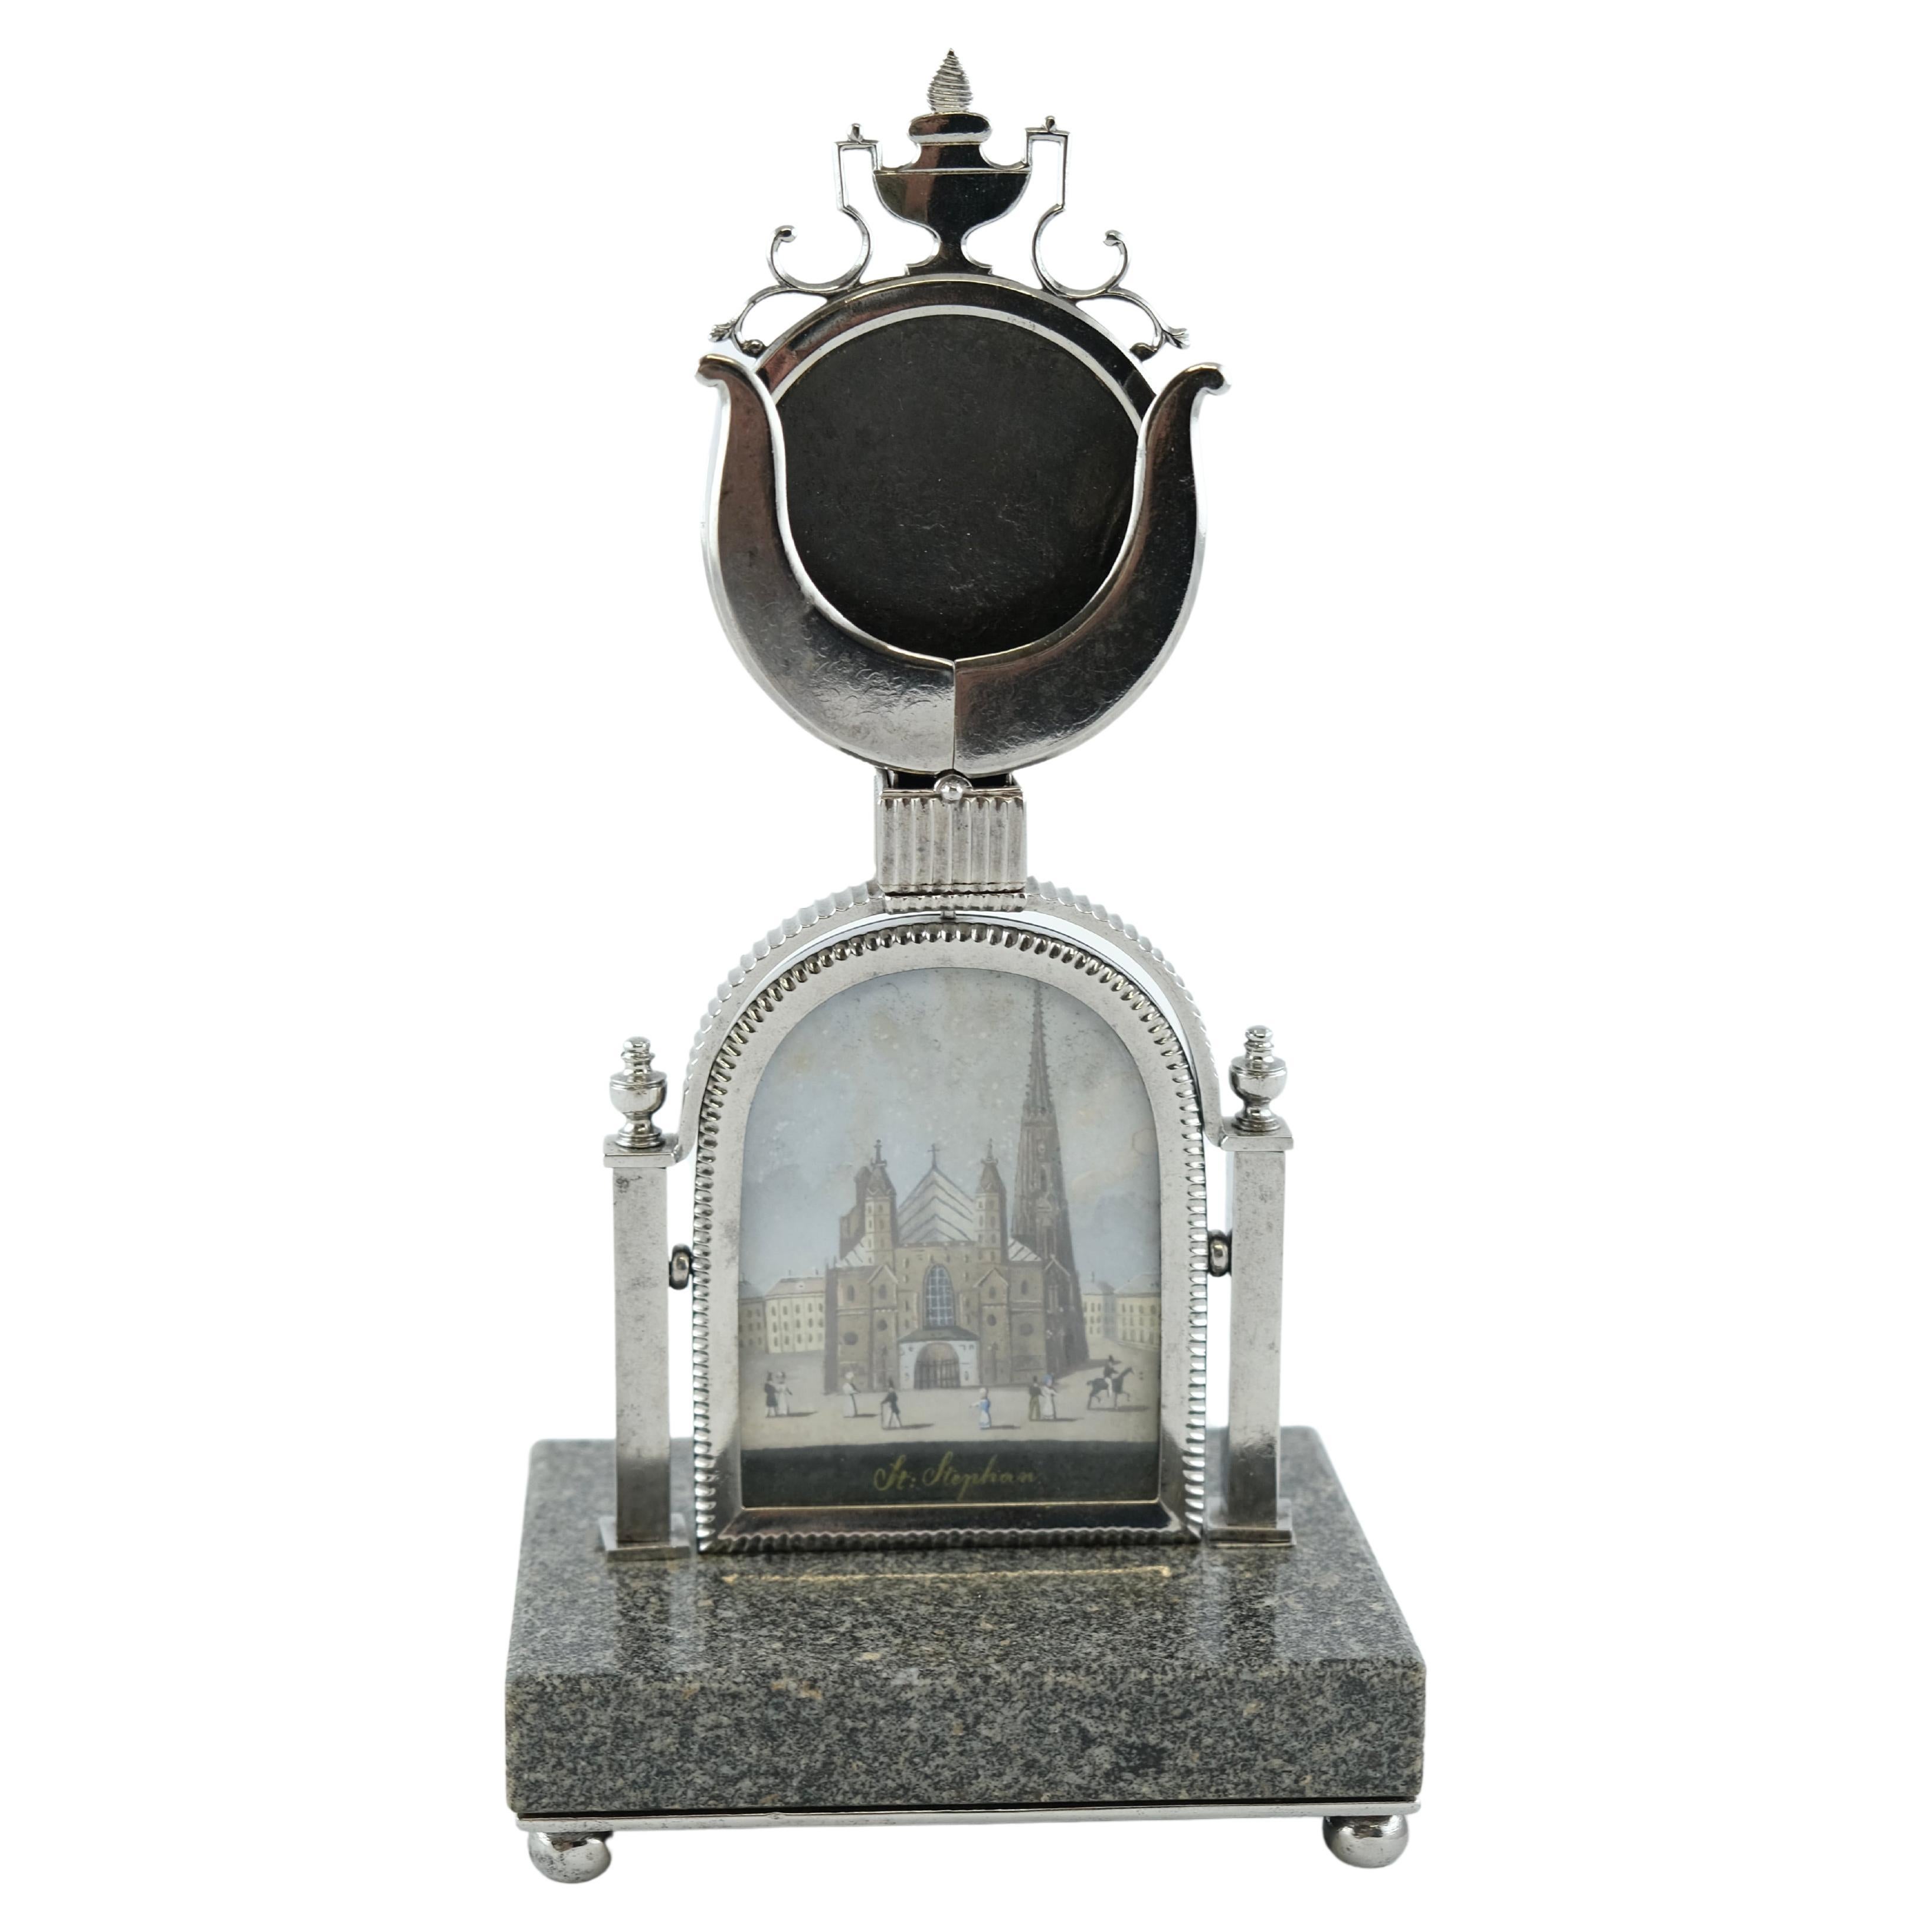 Un porte-horloge autrichien. Granite et acier avec une photo du dôme de St Stephans